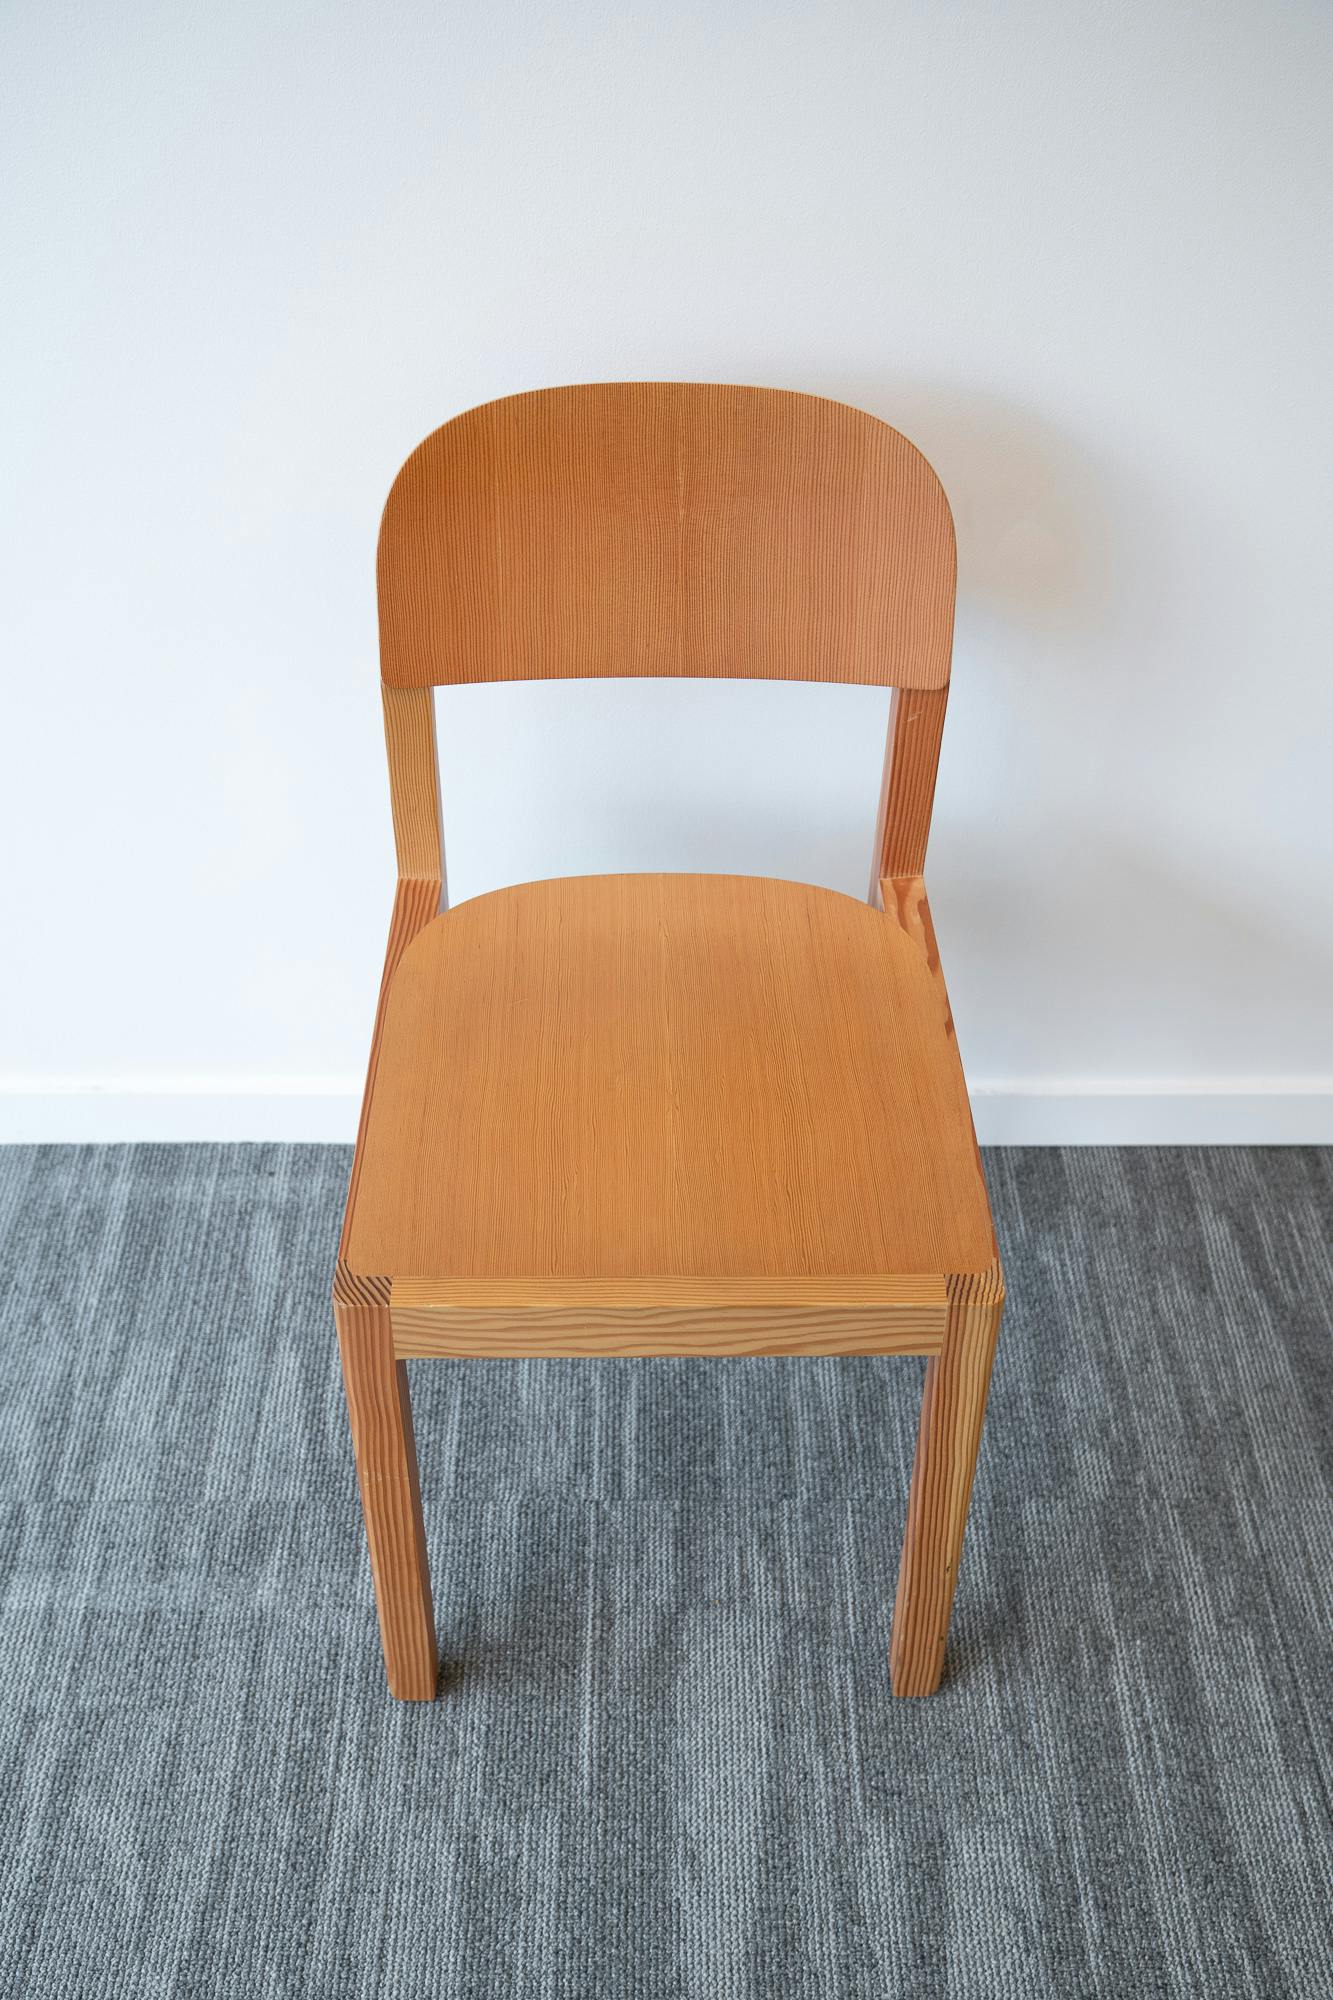 Wooden chair - Qualité de seconde main "Chaises" - Relieve Furniture - 1